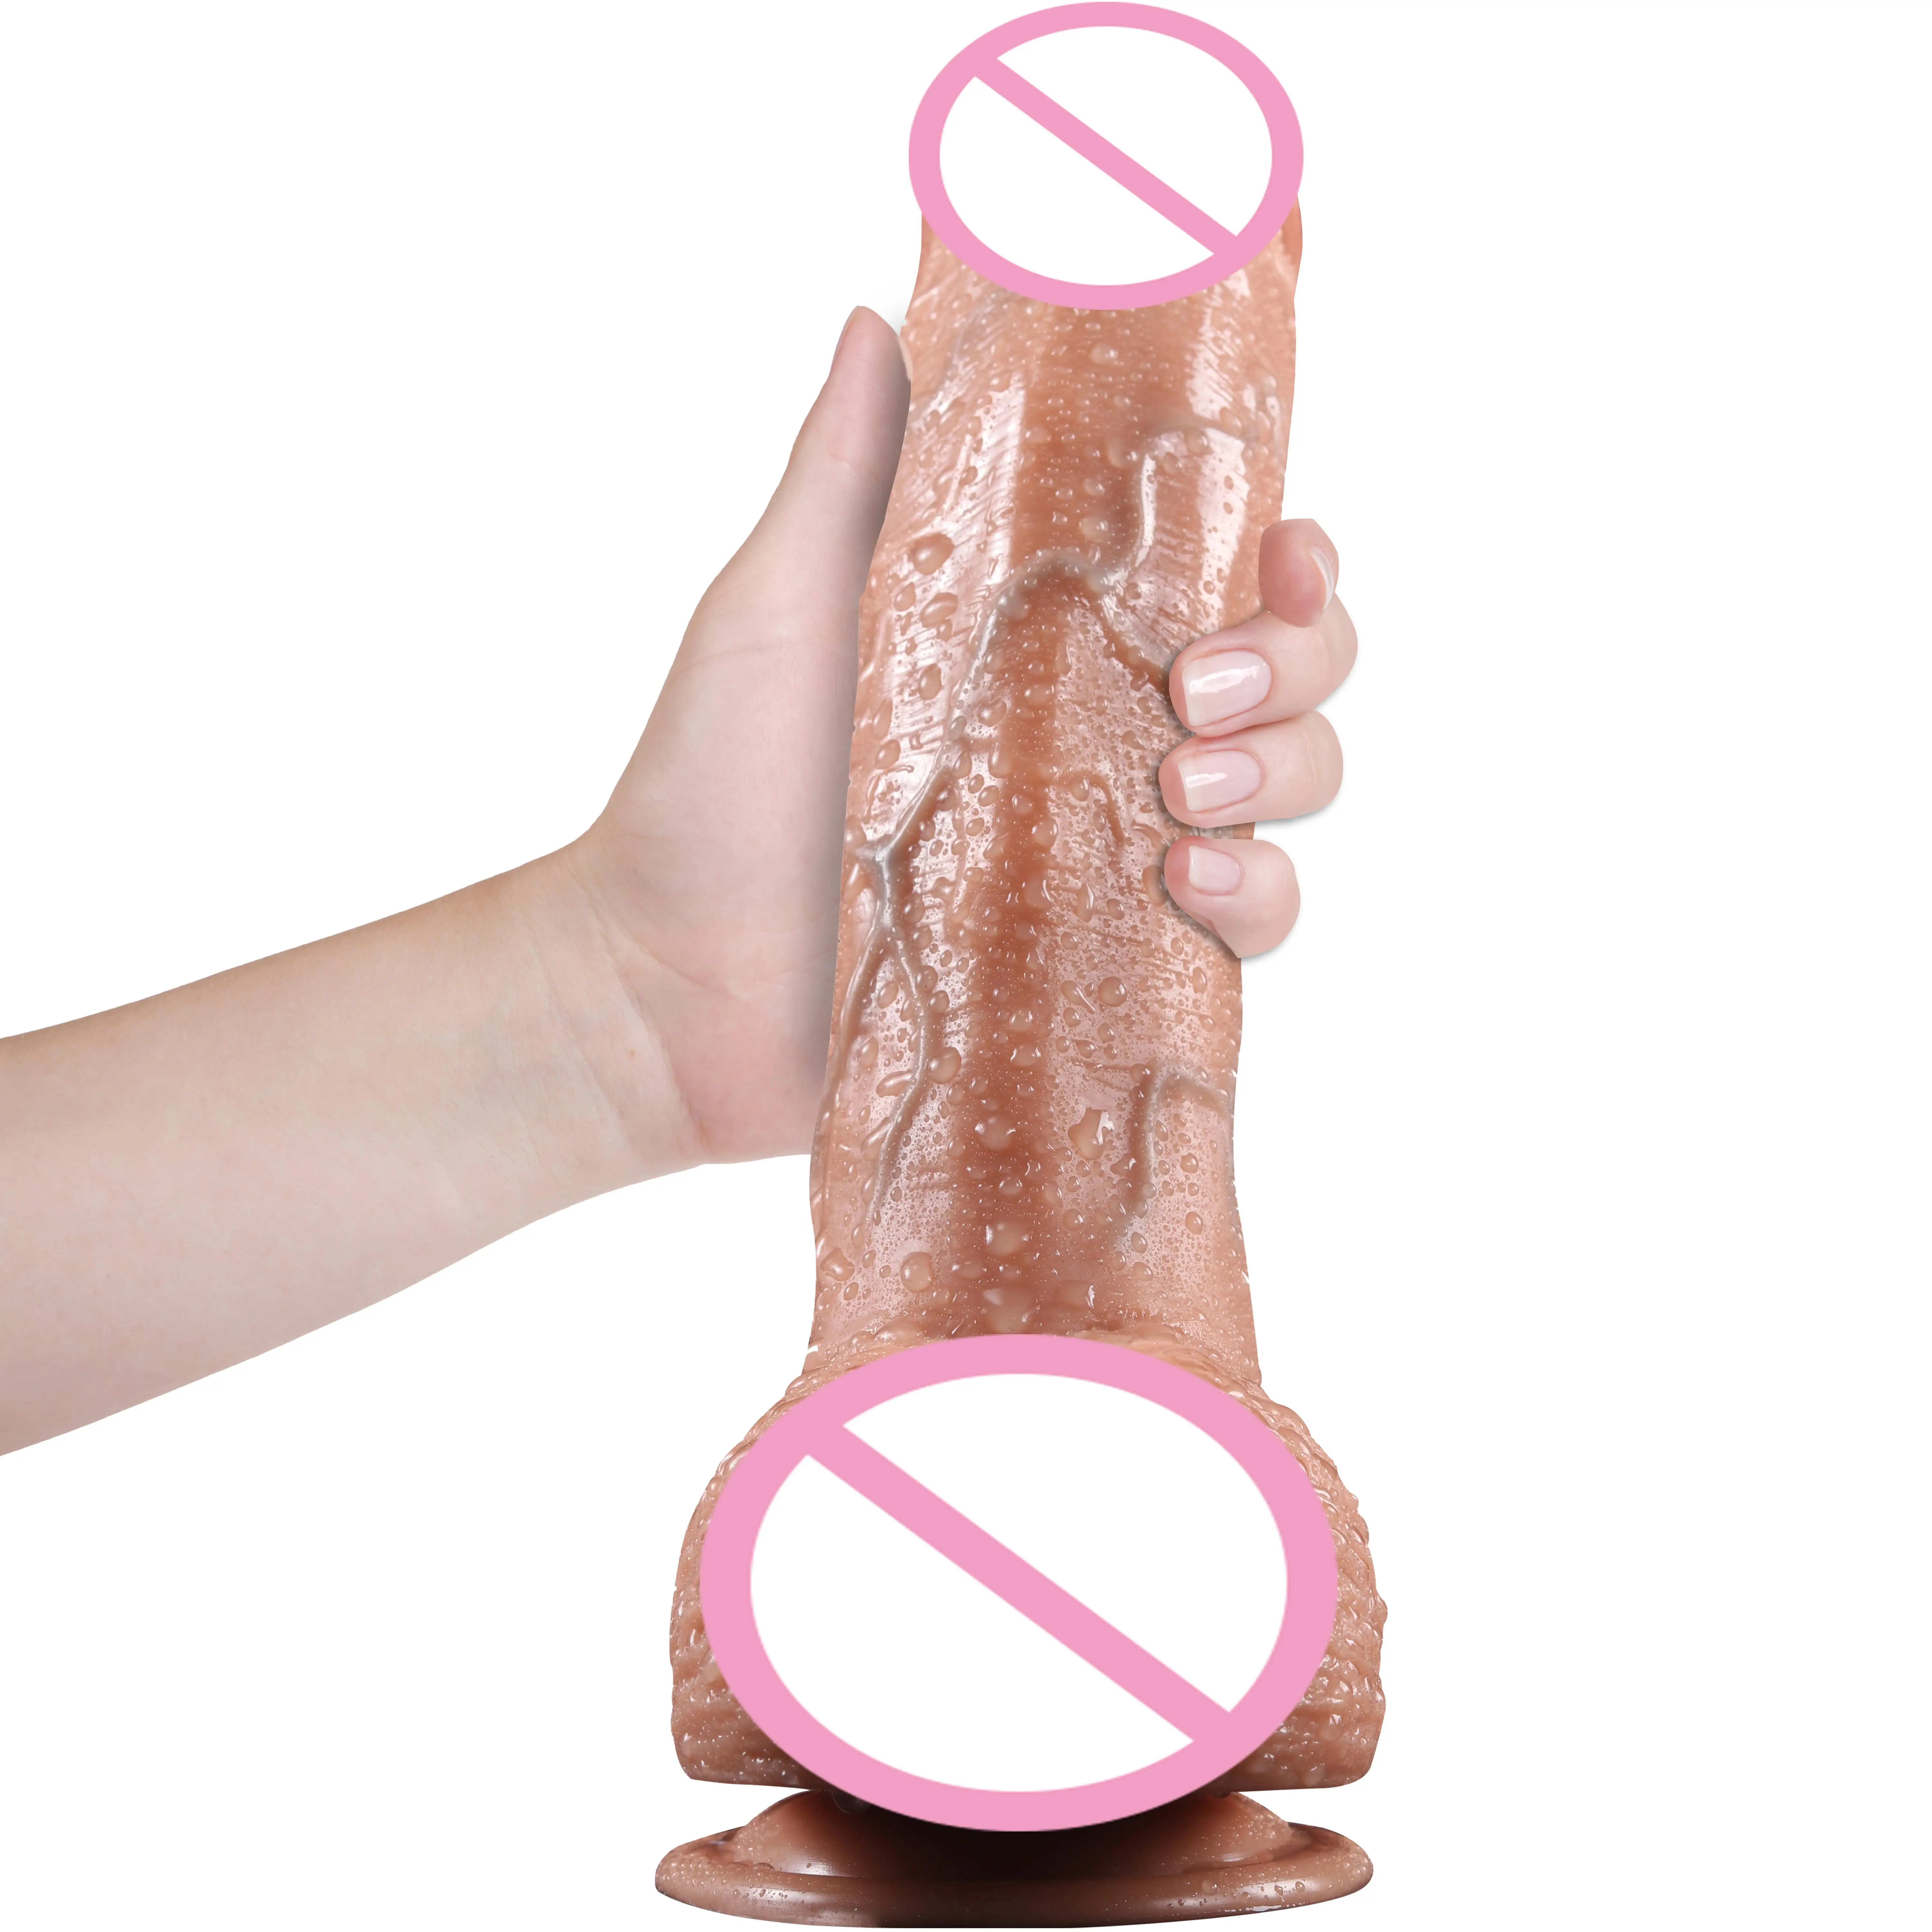 Adulte 9 pouces réaliste épais grandes silicone artificiel réaliste pénis sex toy godes pour femmes dame masturbation sex toys